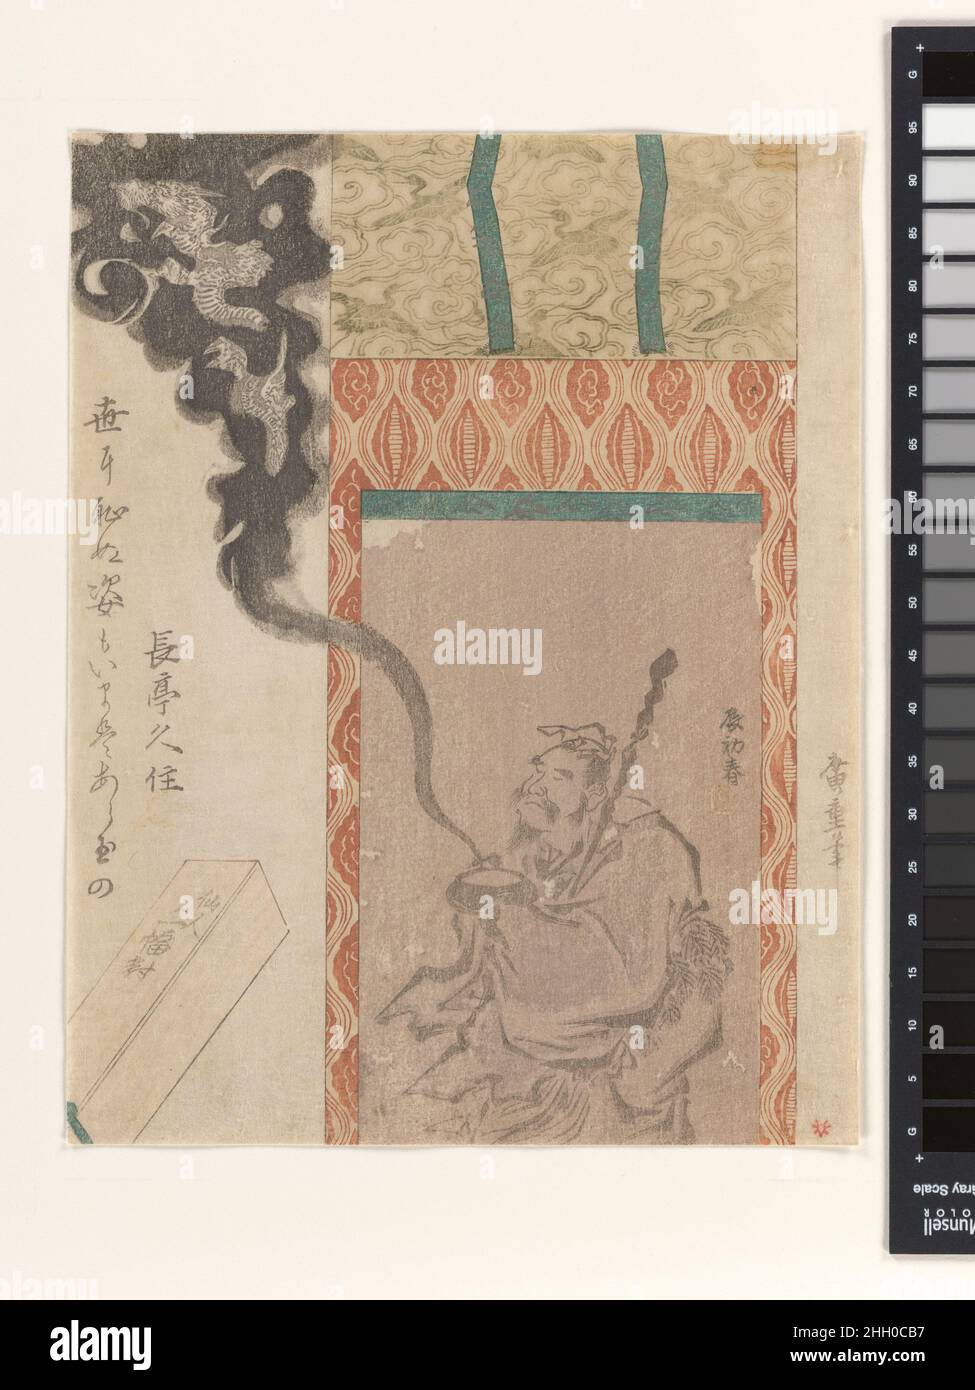 Le Rakan Handaka Sonja avec Dragon 1820 (année du dragon) Utagawa Hiroshige ce dessin de bloc de bois de l'artiste très estimé Utagawa Hiroshige montre un dragon émanant par magie du bol d'alms d'un arhat (disciple de Bouddha) représenté dans un rouleau suspendu.Il s’agit d’un exemple extrêmement rare d’un suribono, ou imprimé en blocs de bois publié en privé, dès le début de la carrière de Hiroshige.Surikono comme celui-ci a souvent été commandé par des groupes de poésie ou des poètes individuels, de la fin du XVIIIe au début du XIXe siècle, comme une forme de carte de vœux du nouvel an.Cet imprimé est un hommage Banque D'Images